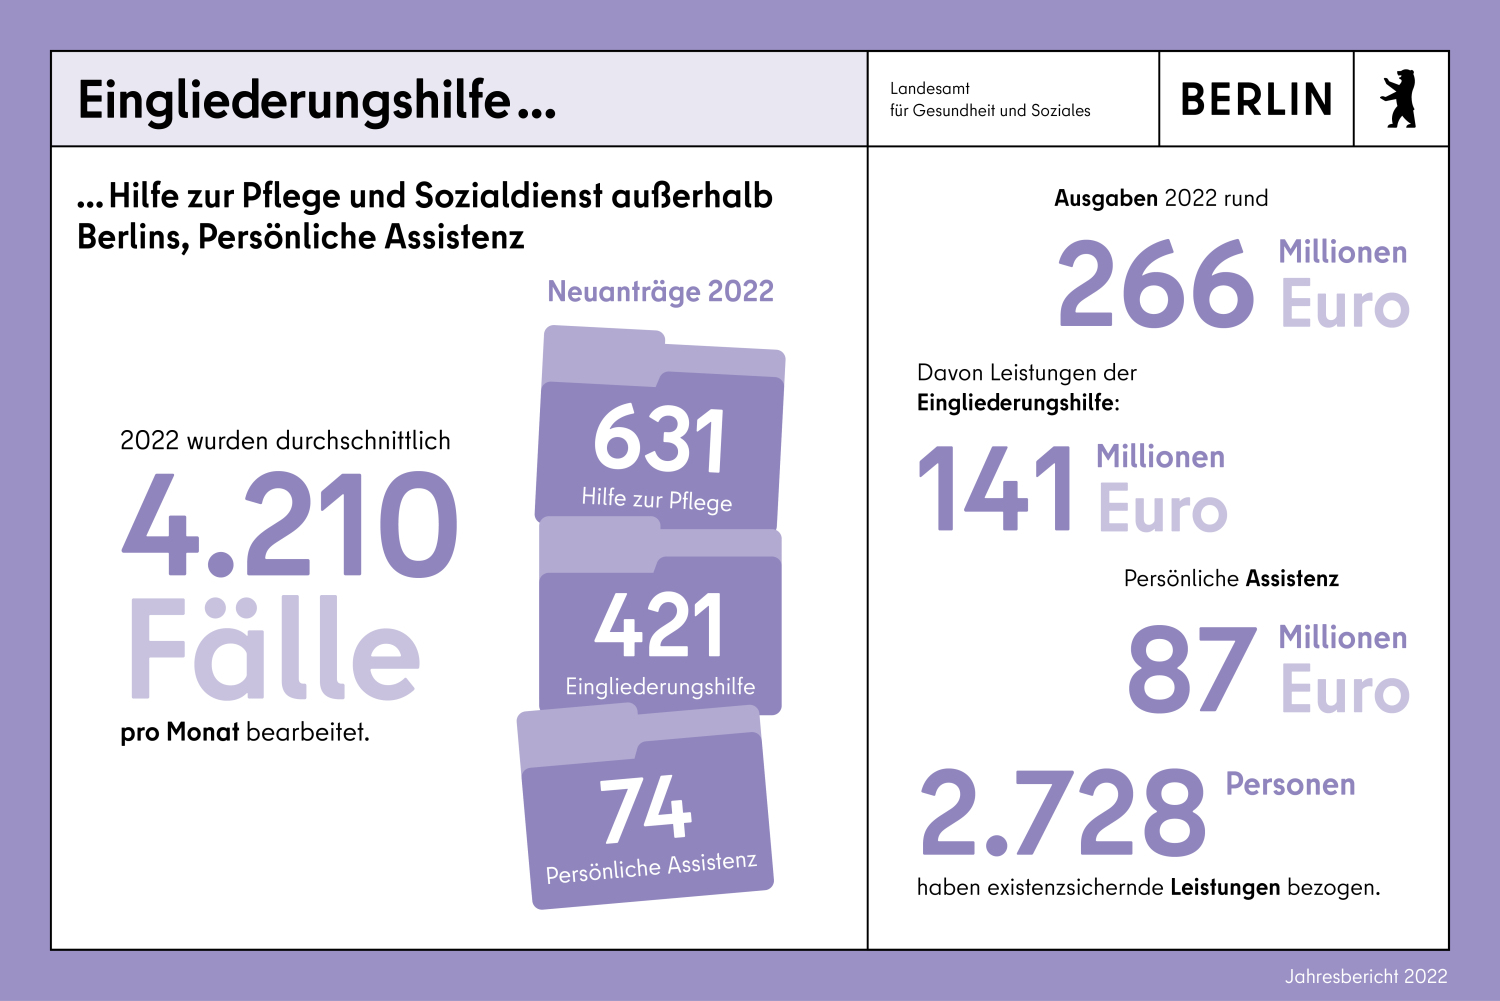 Eingliederungshilfe, Hilfe zur Pflege und Sozialdienst außerhalb Berlins, Persönliche Assistenz 2022 wurden durchschnittlich 4210 Fälle pro Monat bearbeitet. Insgesamt beliefen sich die Ausgaben im Jahr 2022 auf rund 266 Mio. Euro (2021: 260 Mio. Euro).